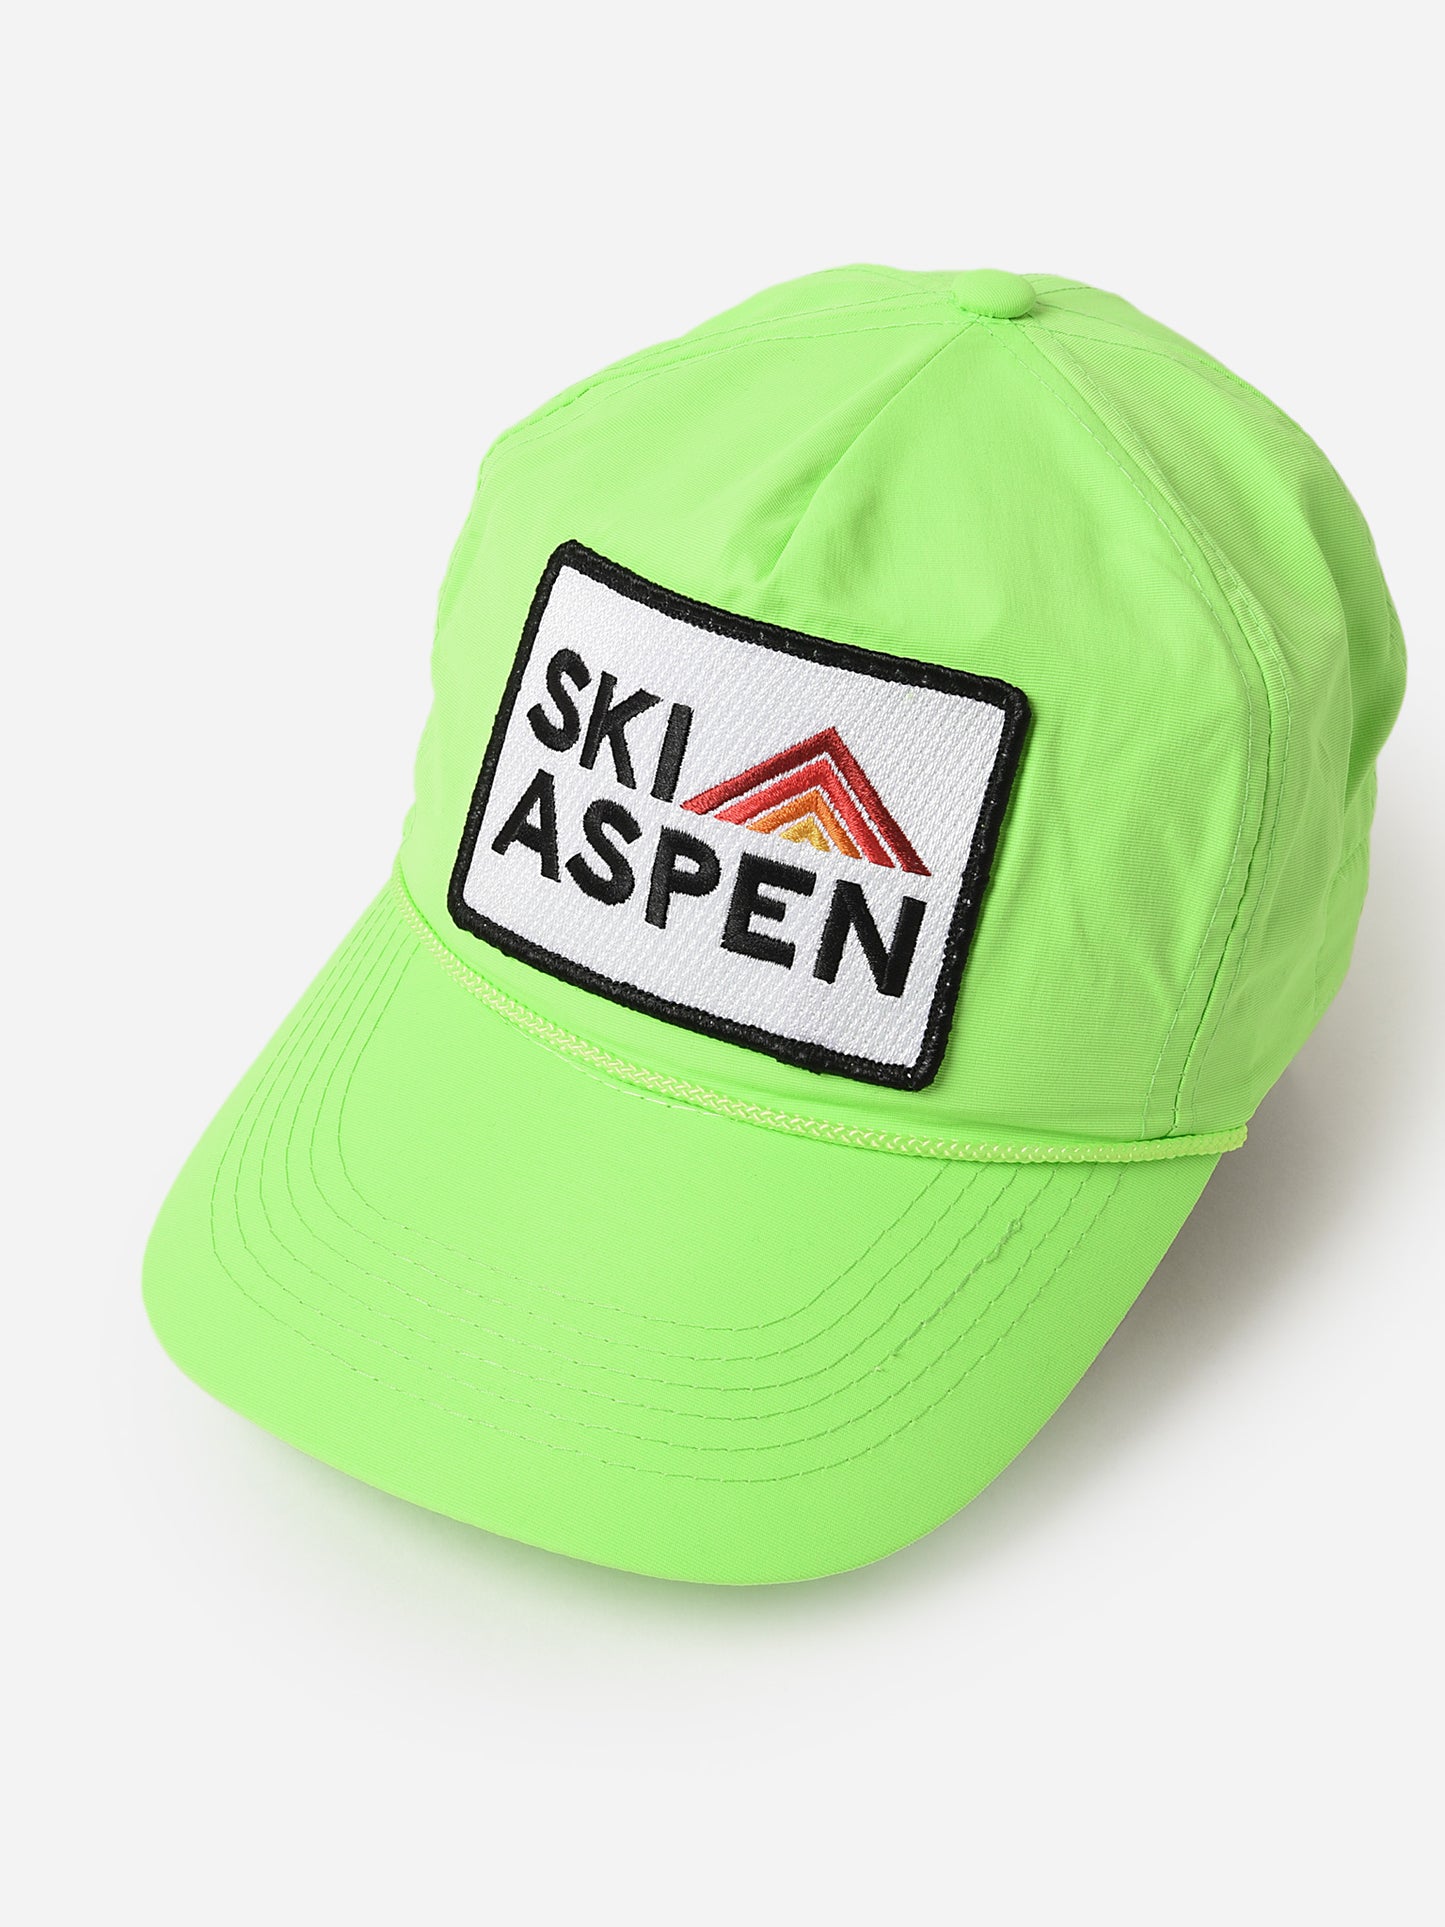 Aviator Nation Ski Aspen Vintage Trucker Hat, Neon Green, Nylon | St. Bernard